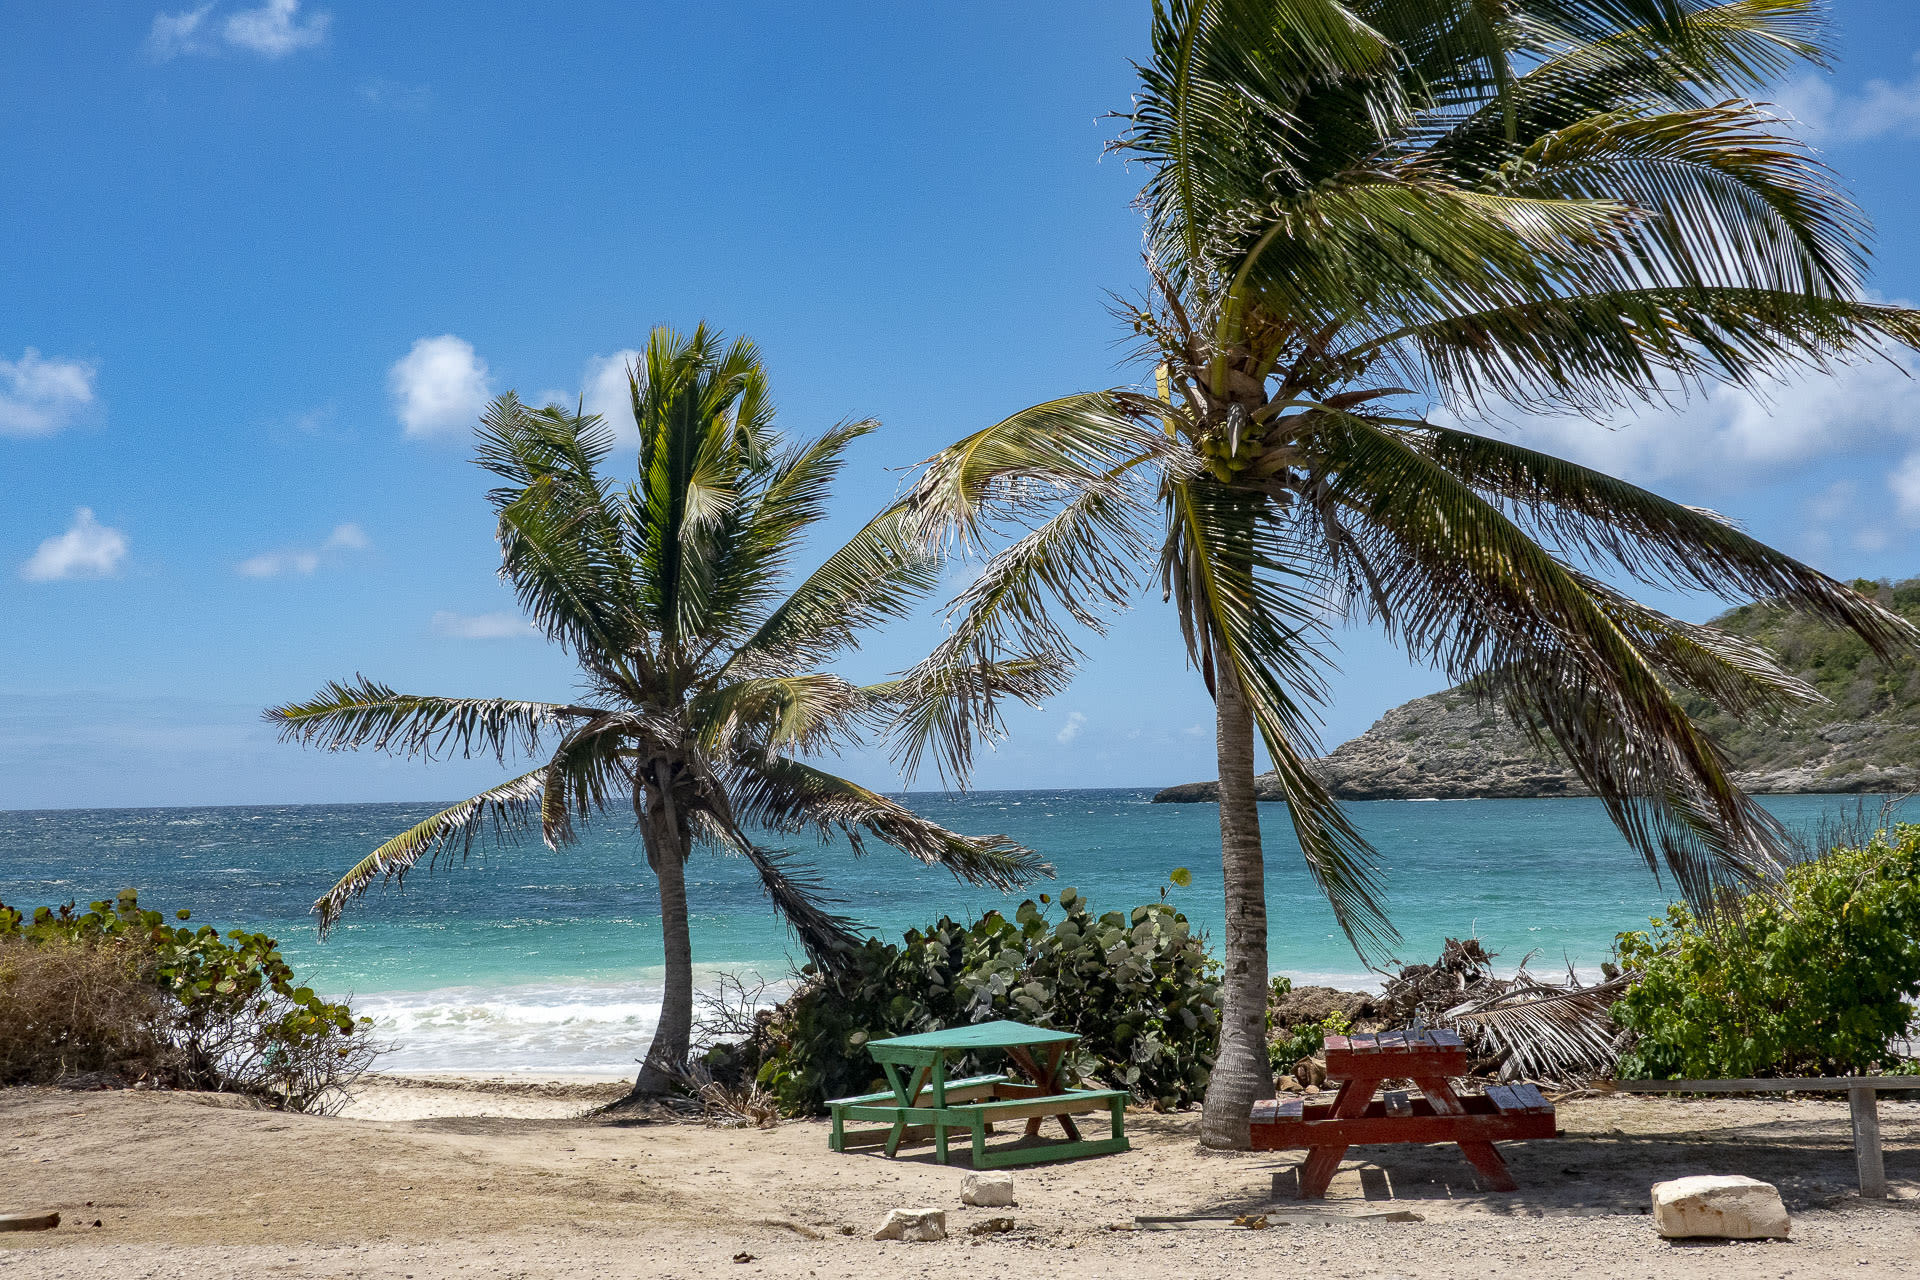 A beach in Antigua